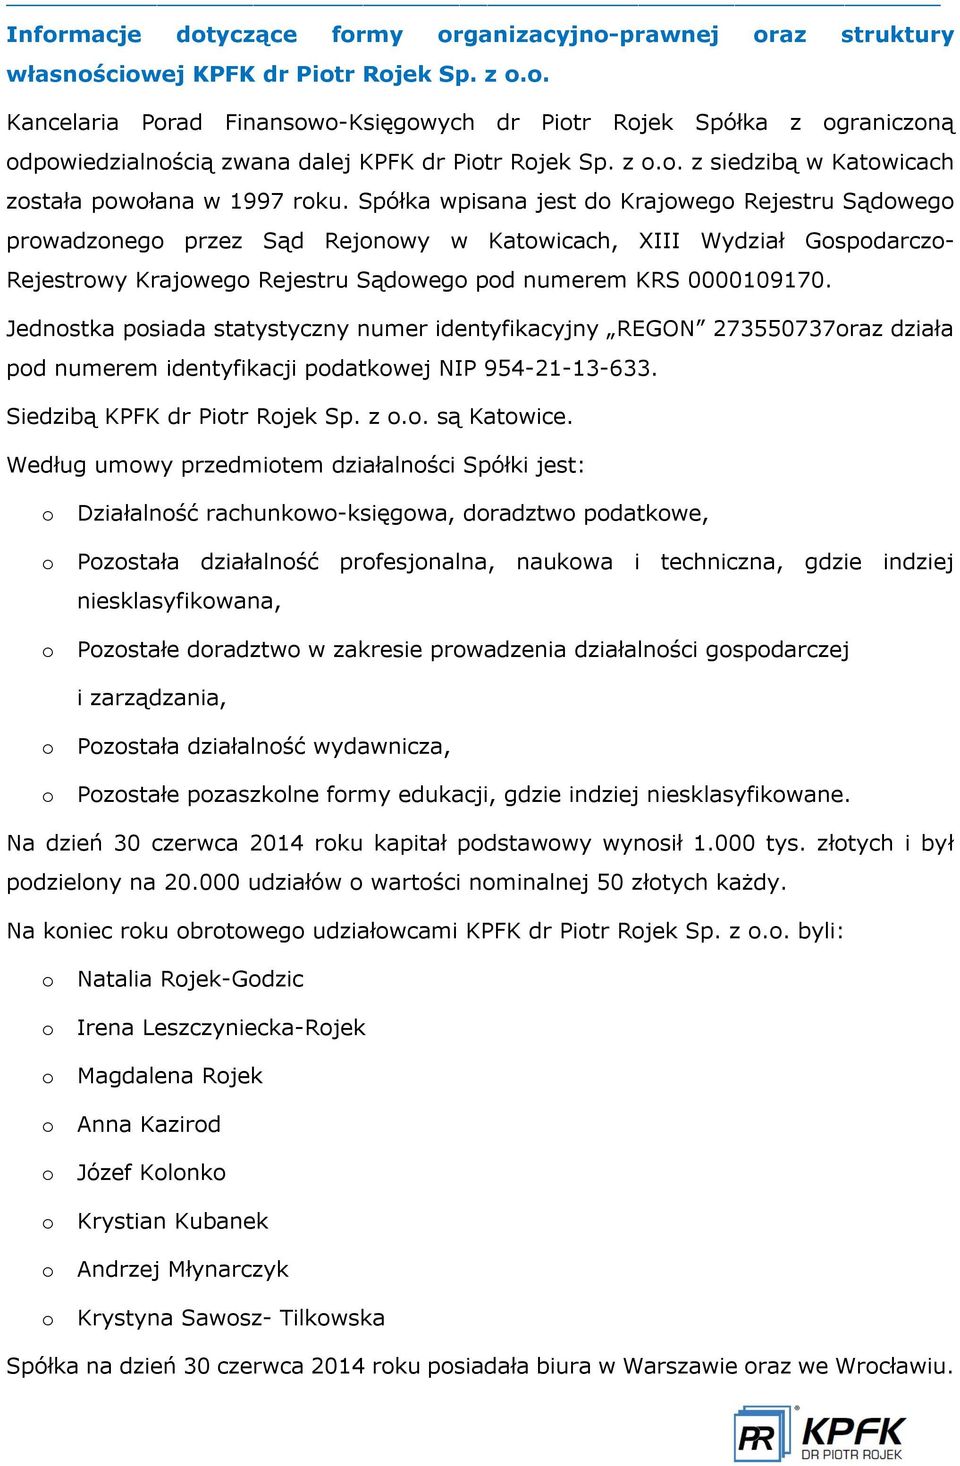 Spółka wpisana jest do Krajowego Rejestru S dowego prowadzonego przez S d Rejonowy w Katowicach, XIII Wydział Gospodarczo- Rejestrowy Krajowego Rejestru S dowego pod numerem KRS 0000109170.